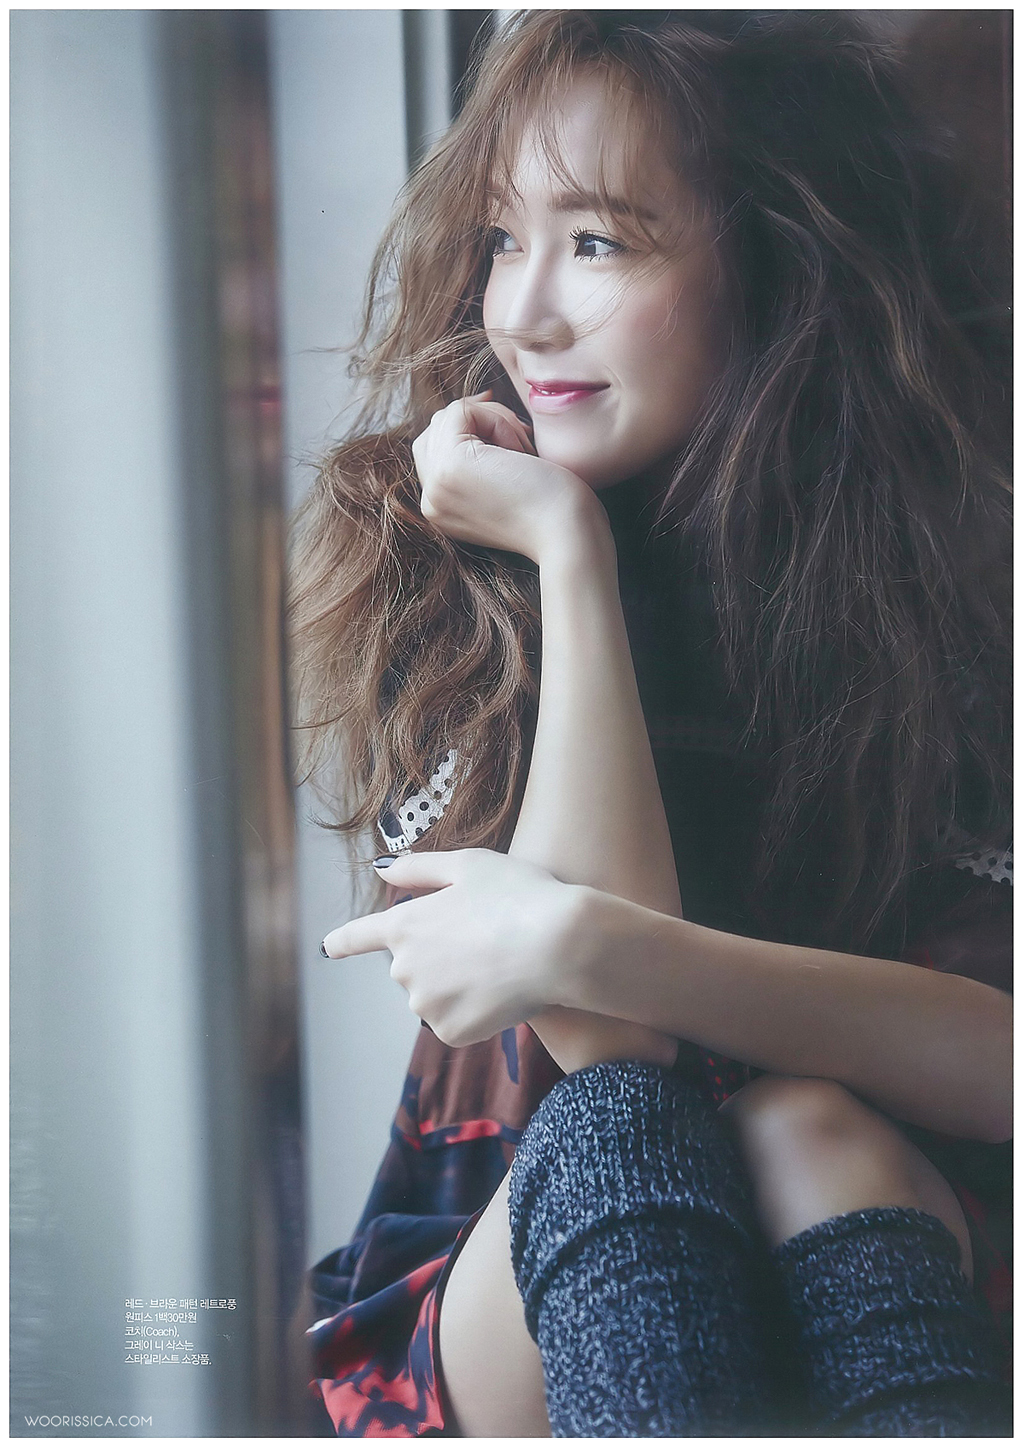 [PIC][17-09-2014]Jessica xuất hiện trên ấn phẩm tháng 10 của tạp chí "CECI" 24232034541AAC261A5DAC